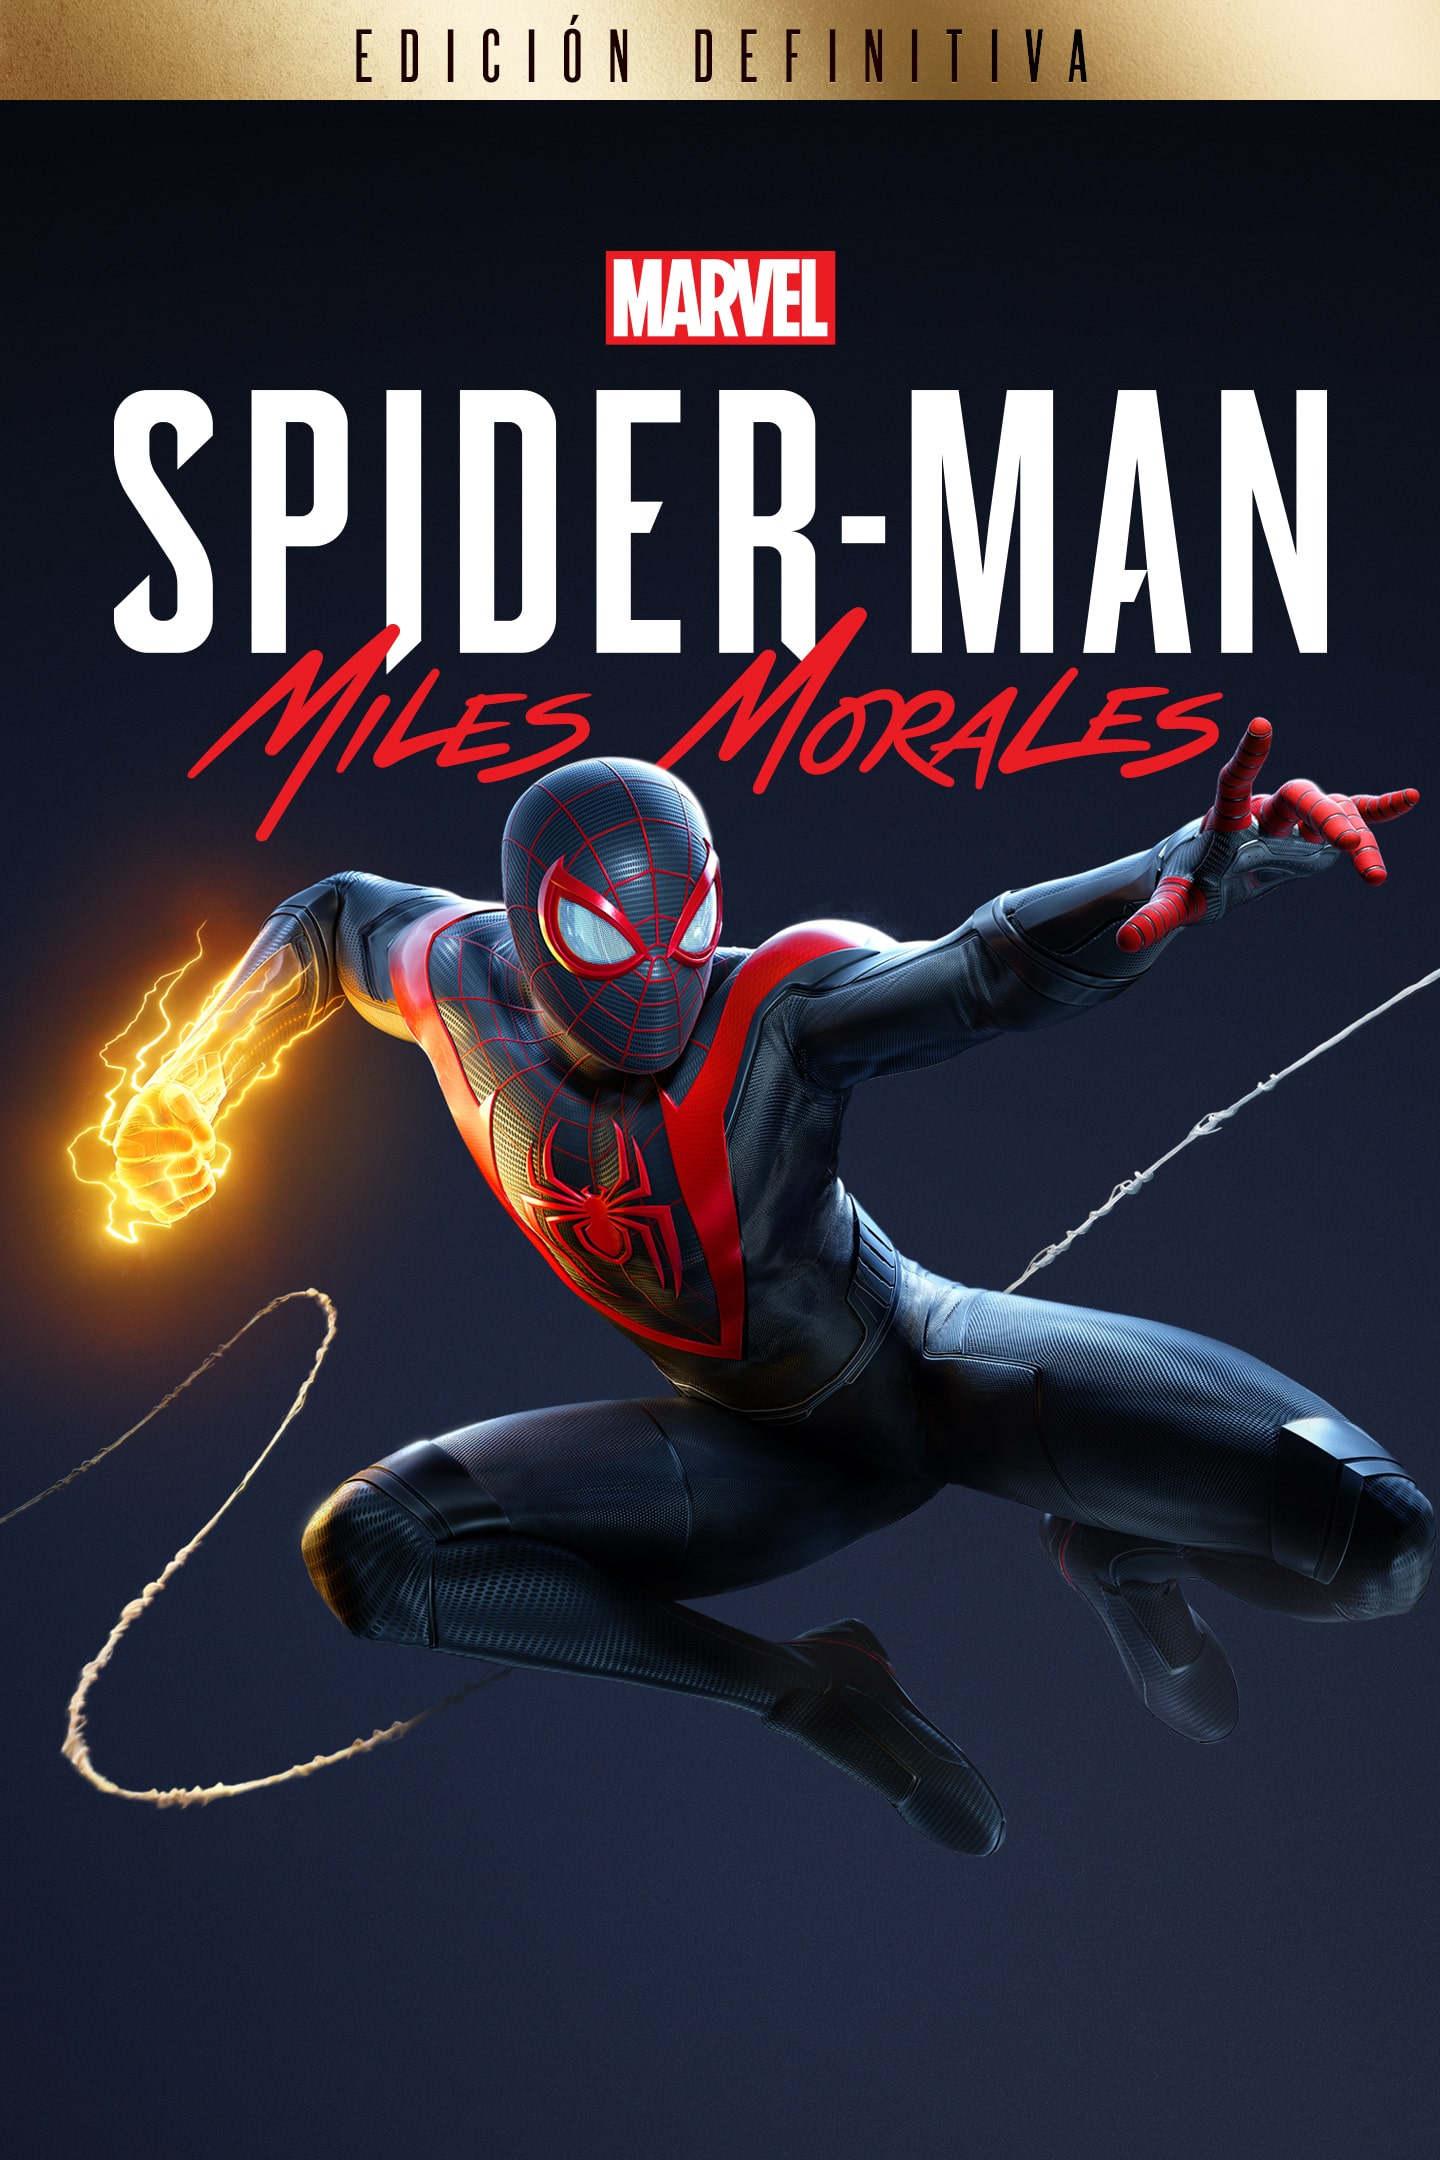 Marvel's Spider-Man: Miles Morales| Juegos de PS4 y PS5 | PlayStation